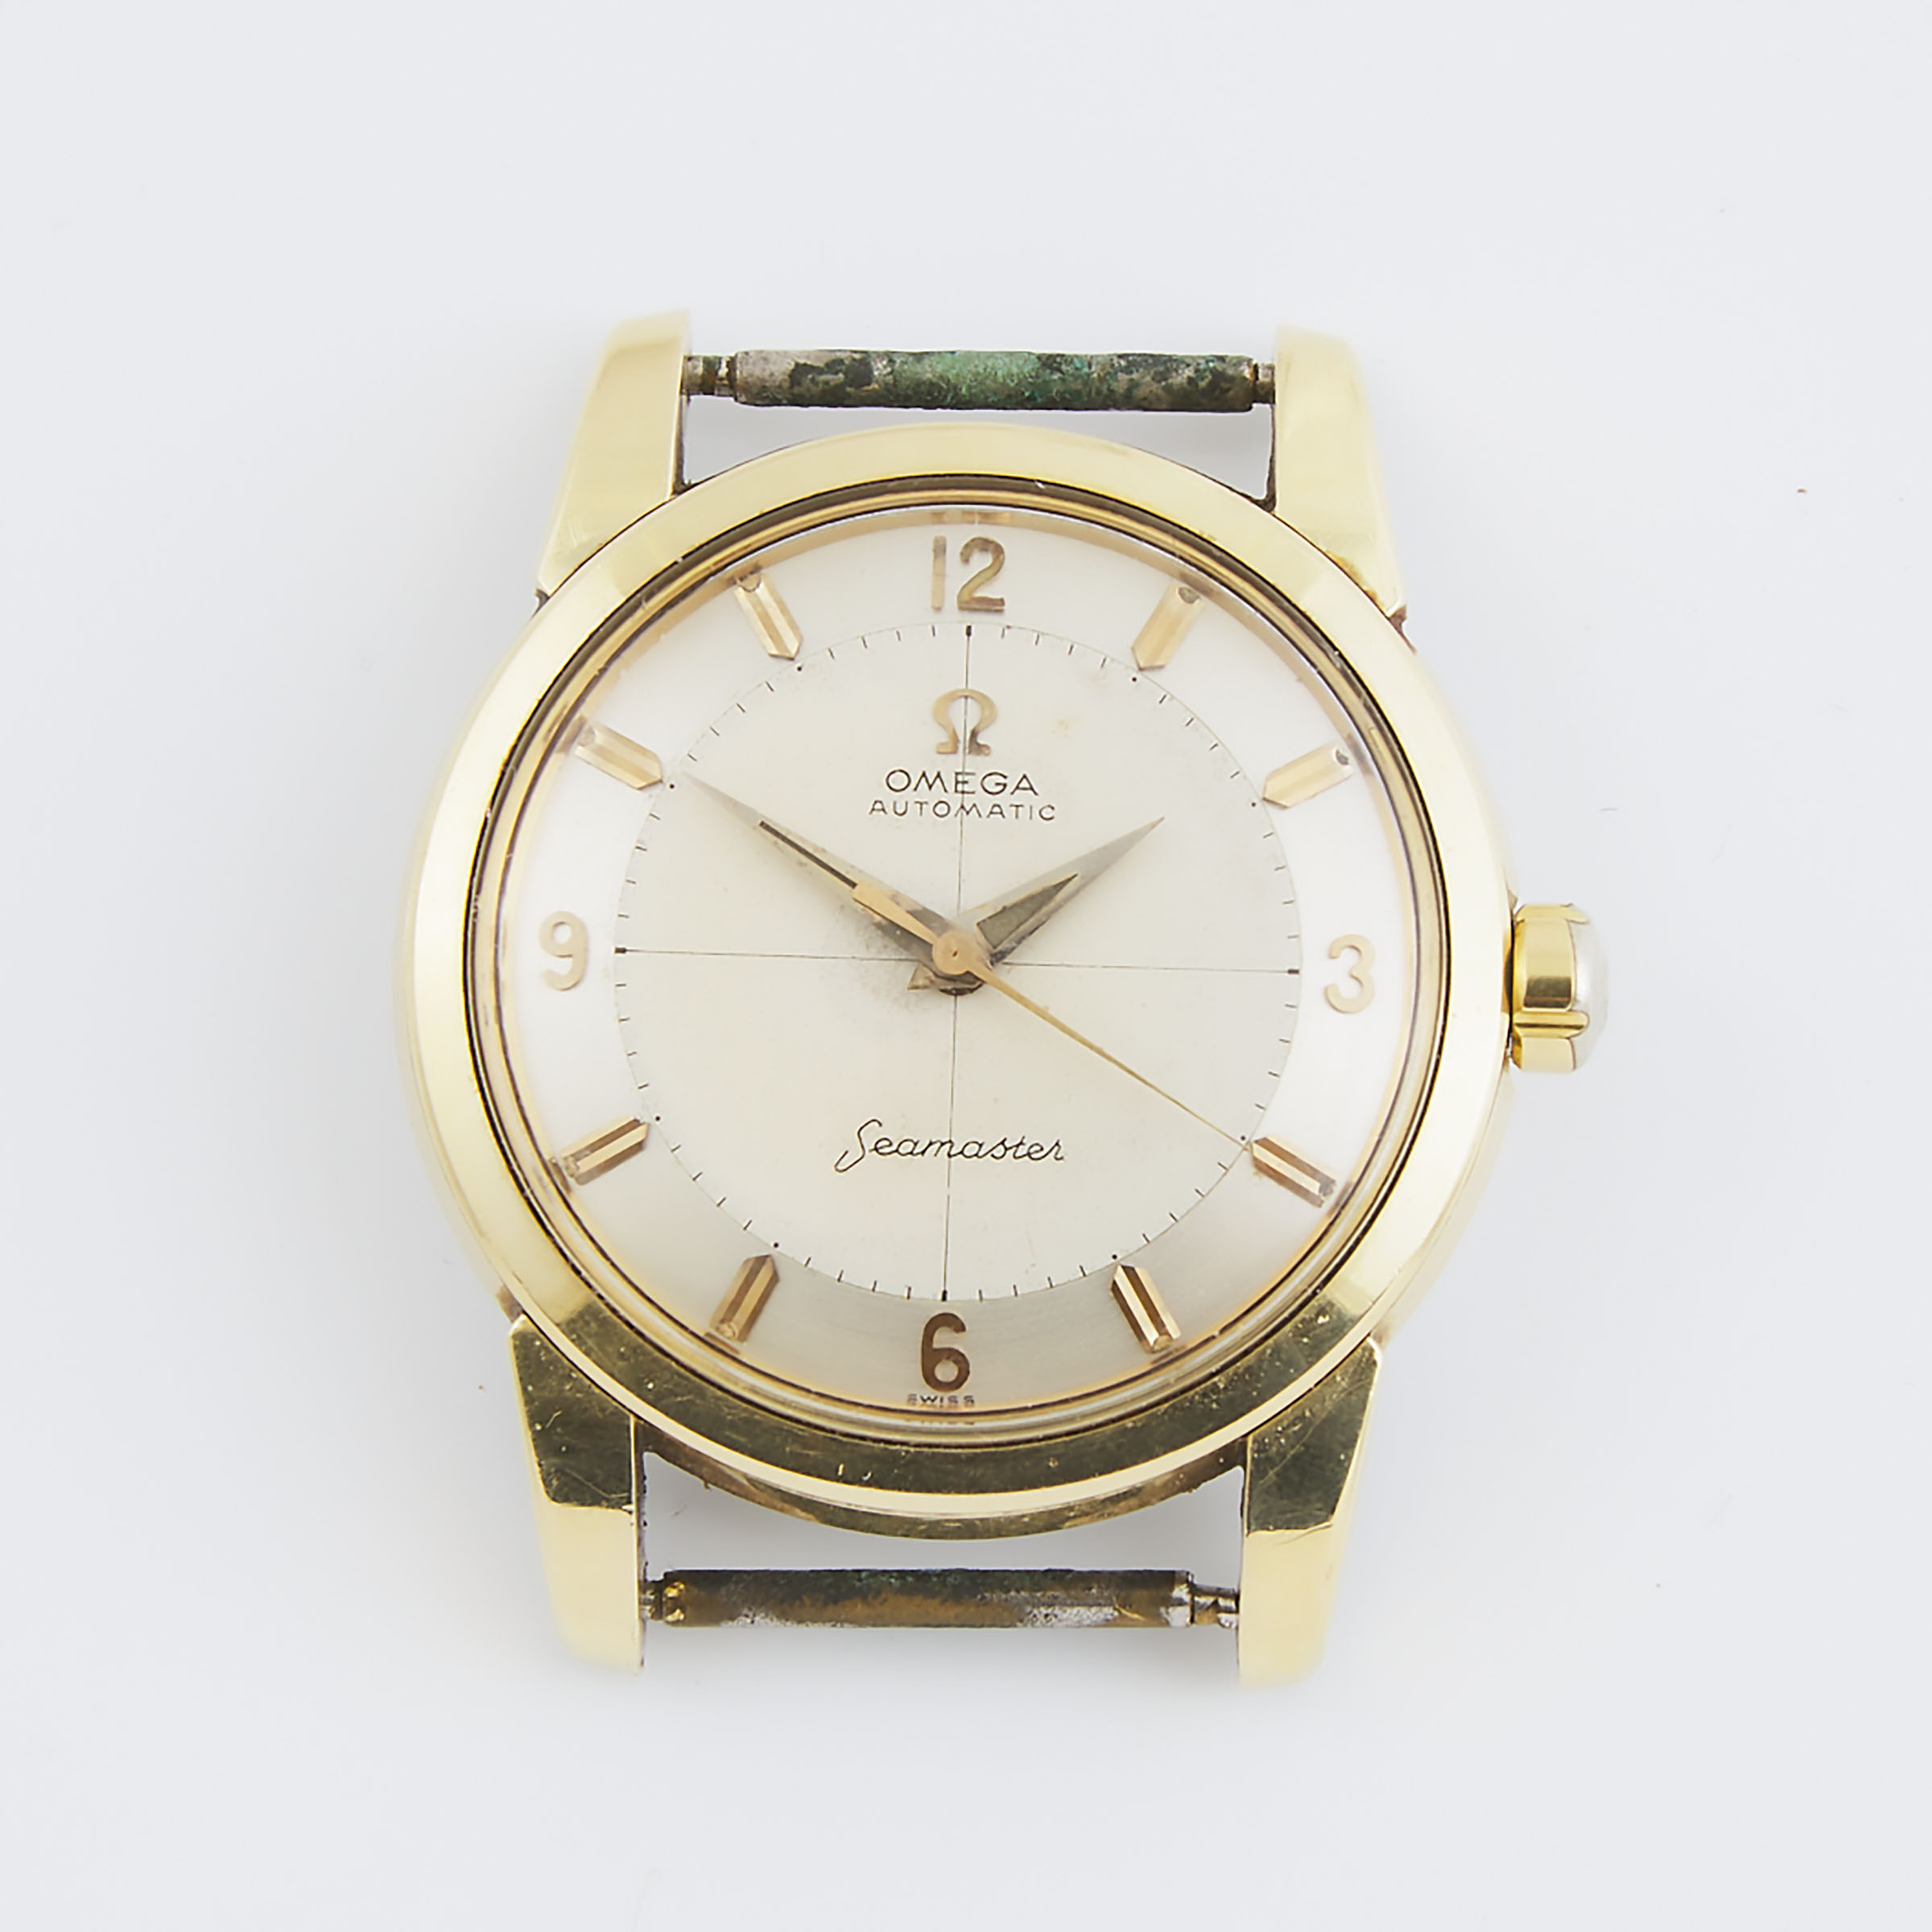 Omega Automatic Seamaster Wristwatch 